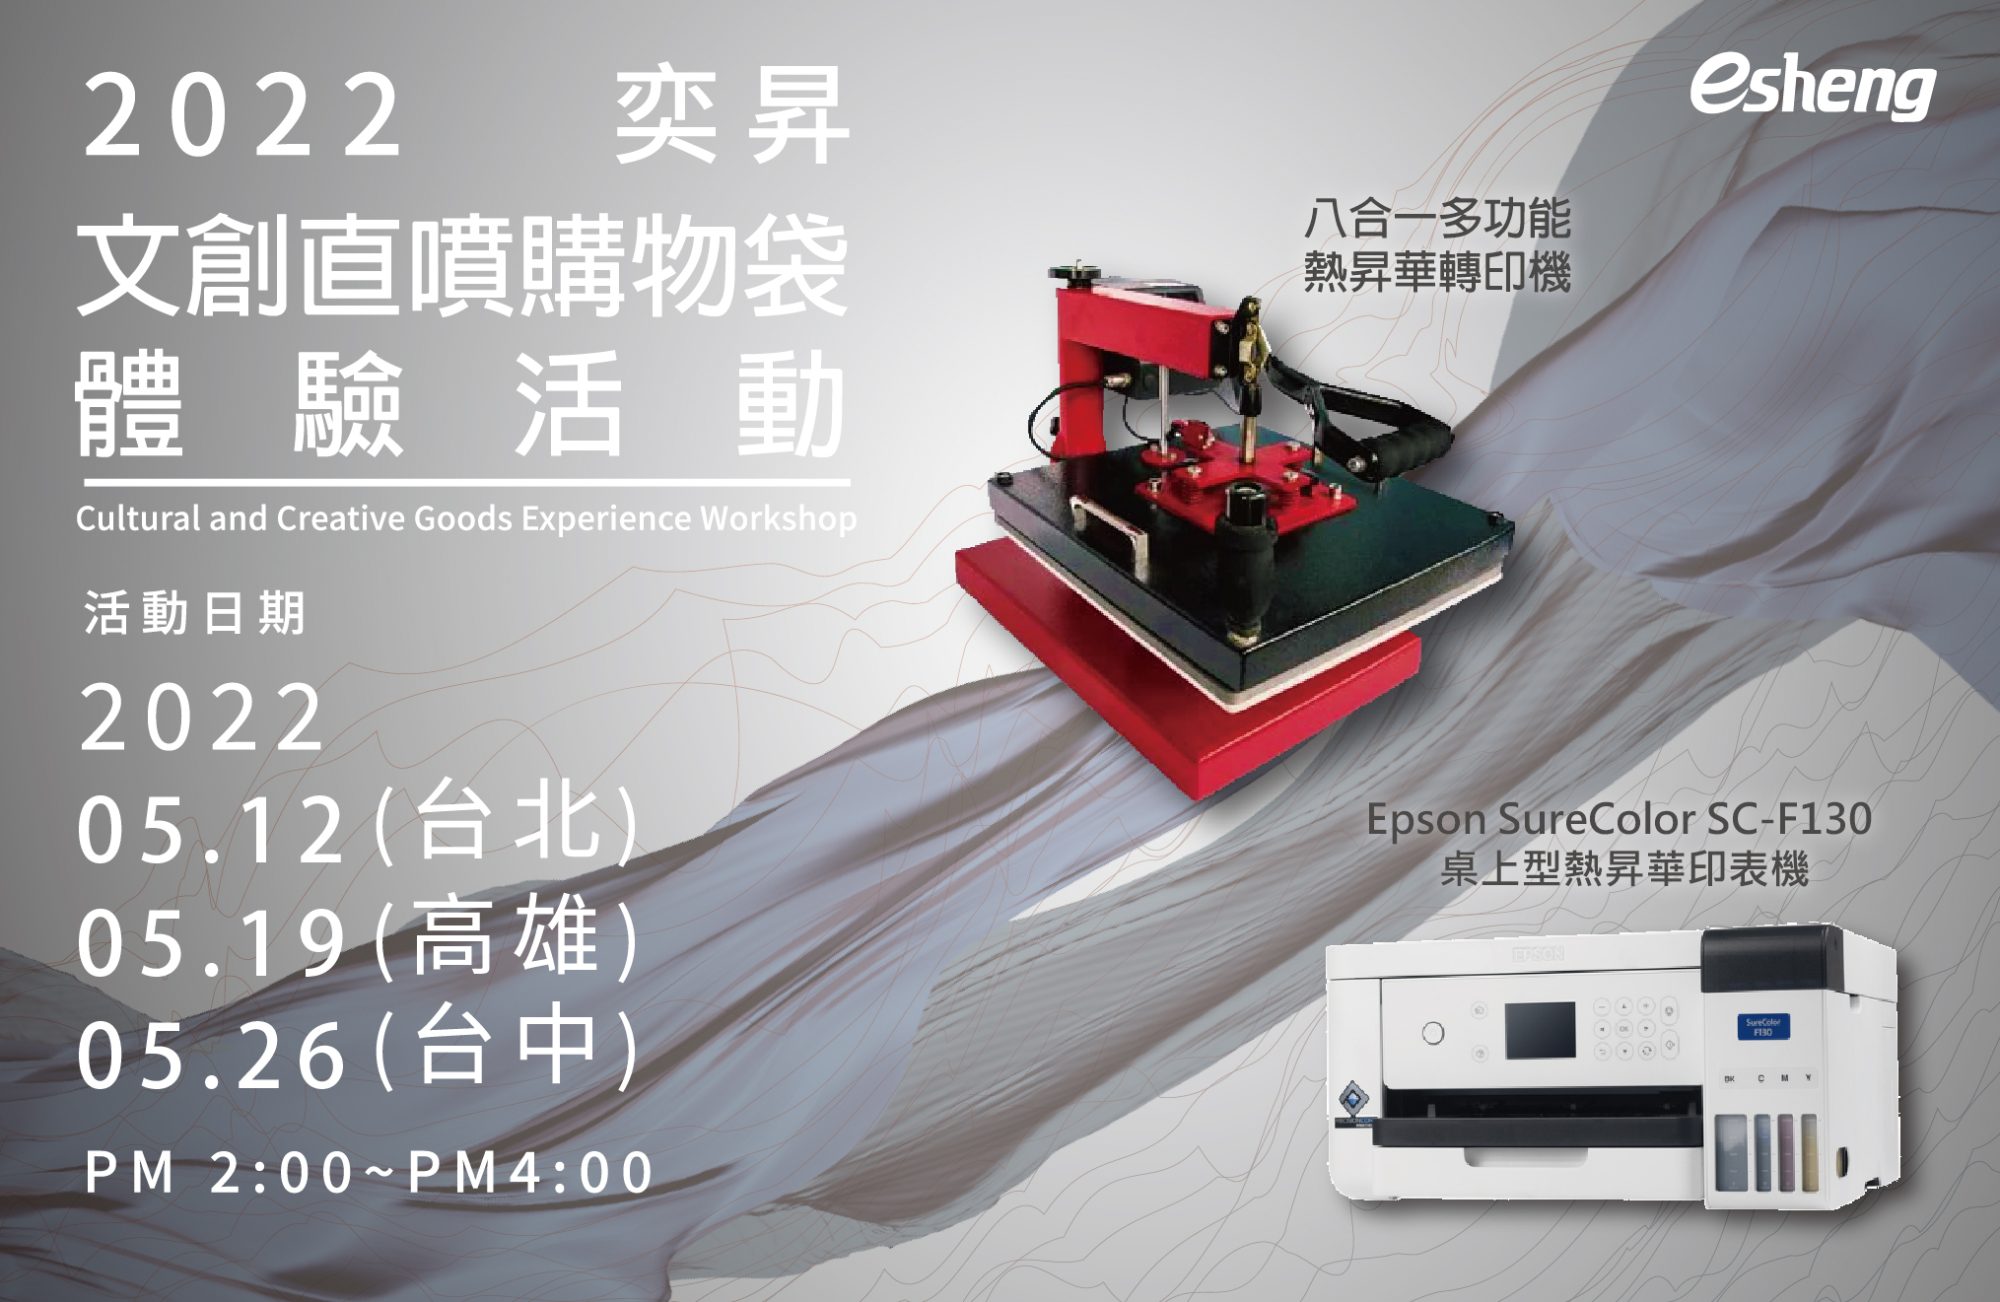 您目前正在查看 轉印文創商品體驗活動 – 八合一轉印機+F130熱昇華印表機